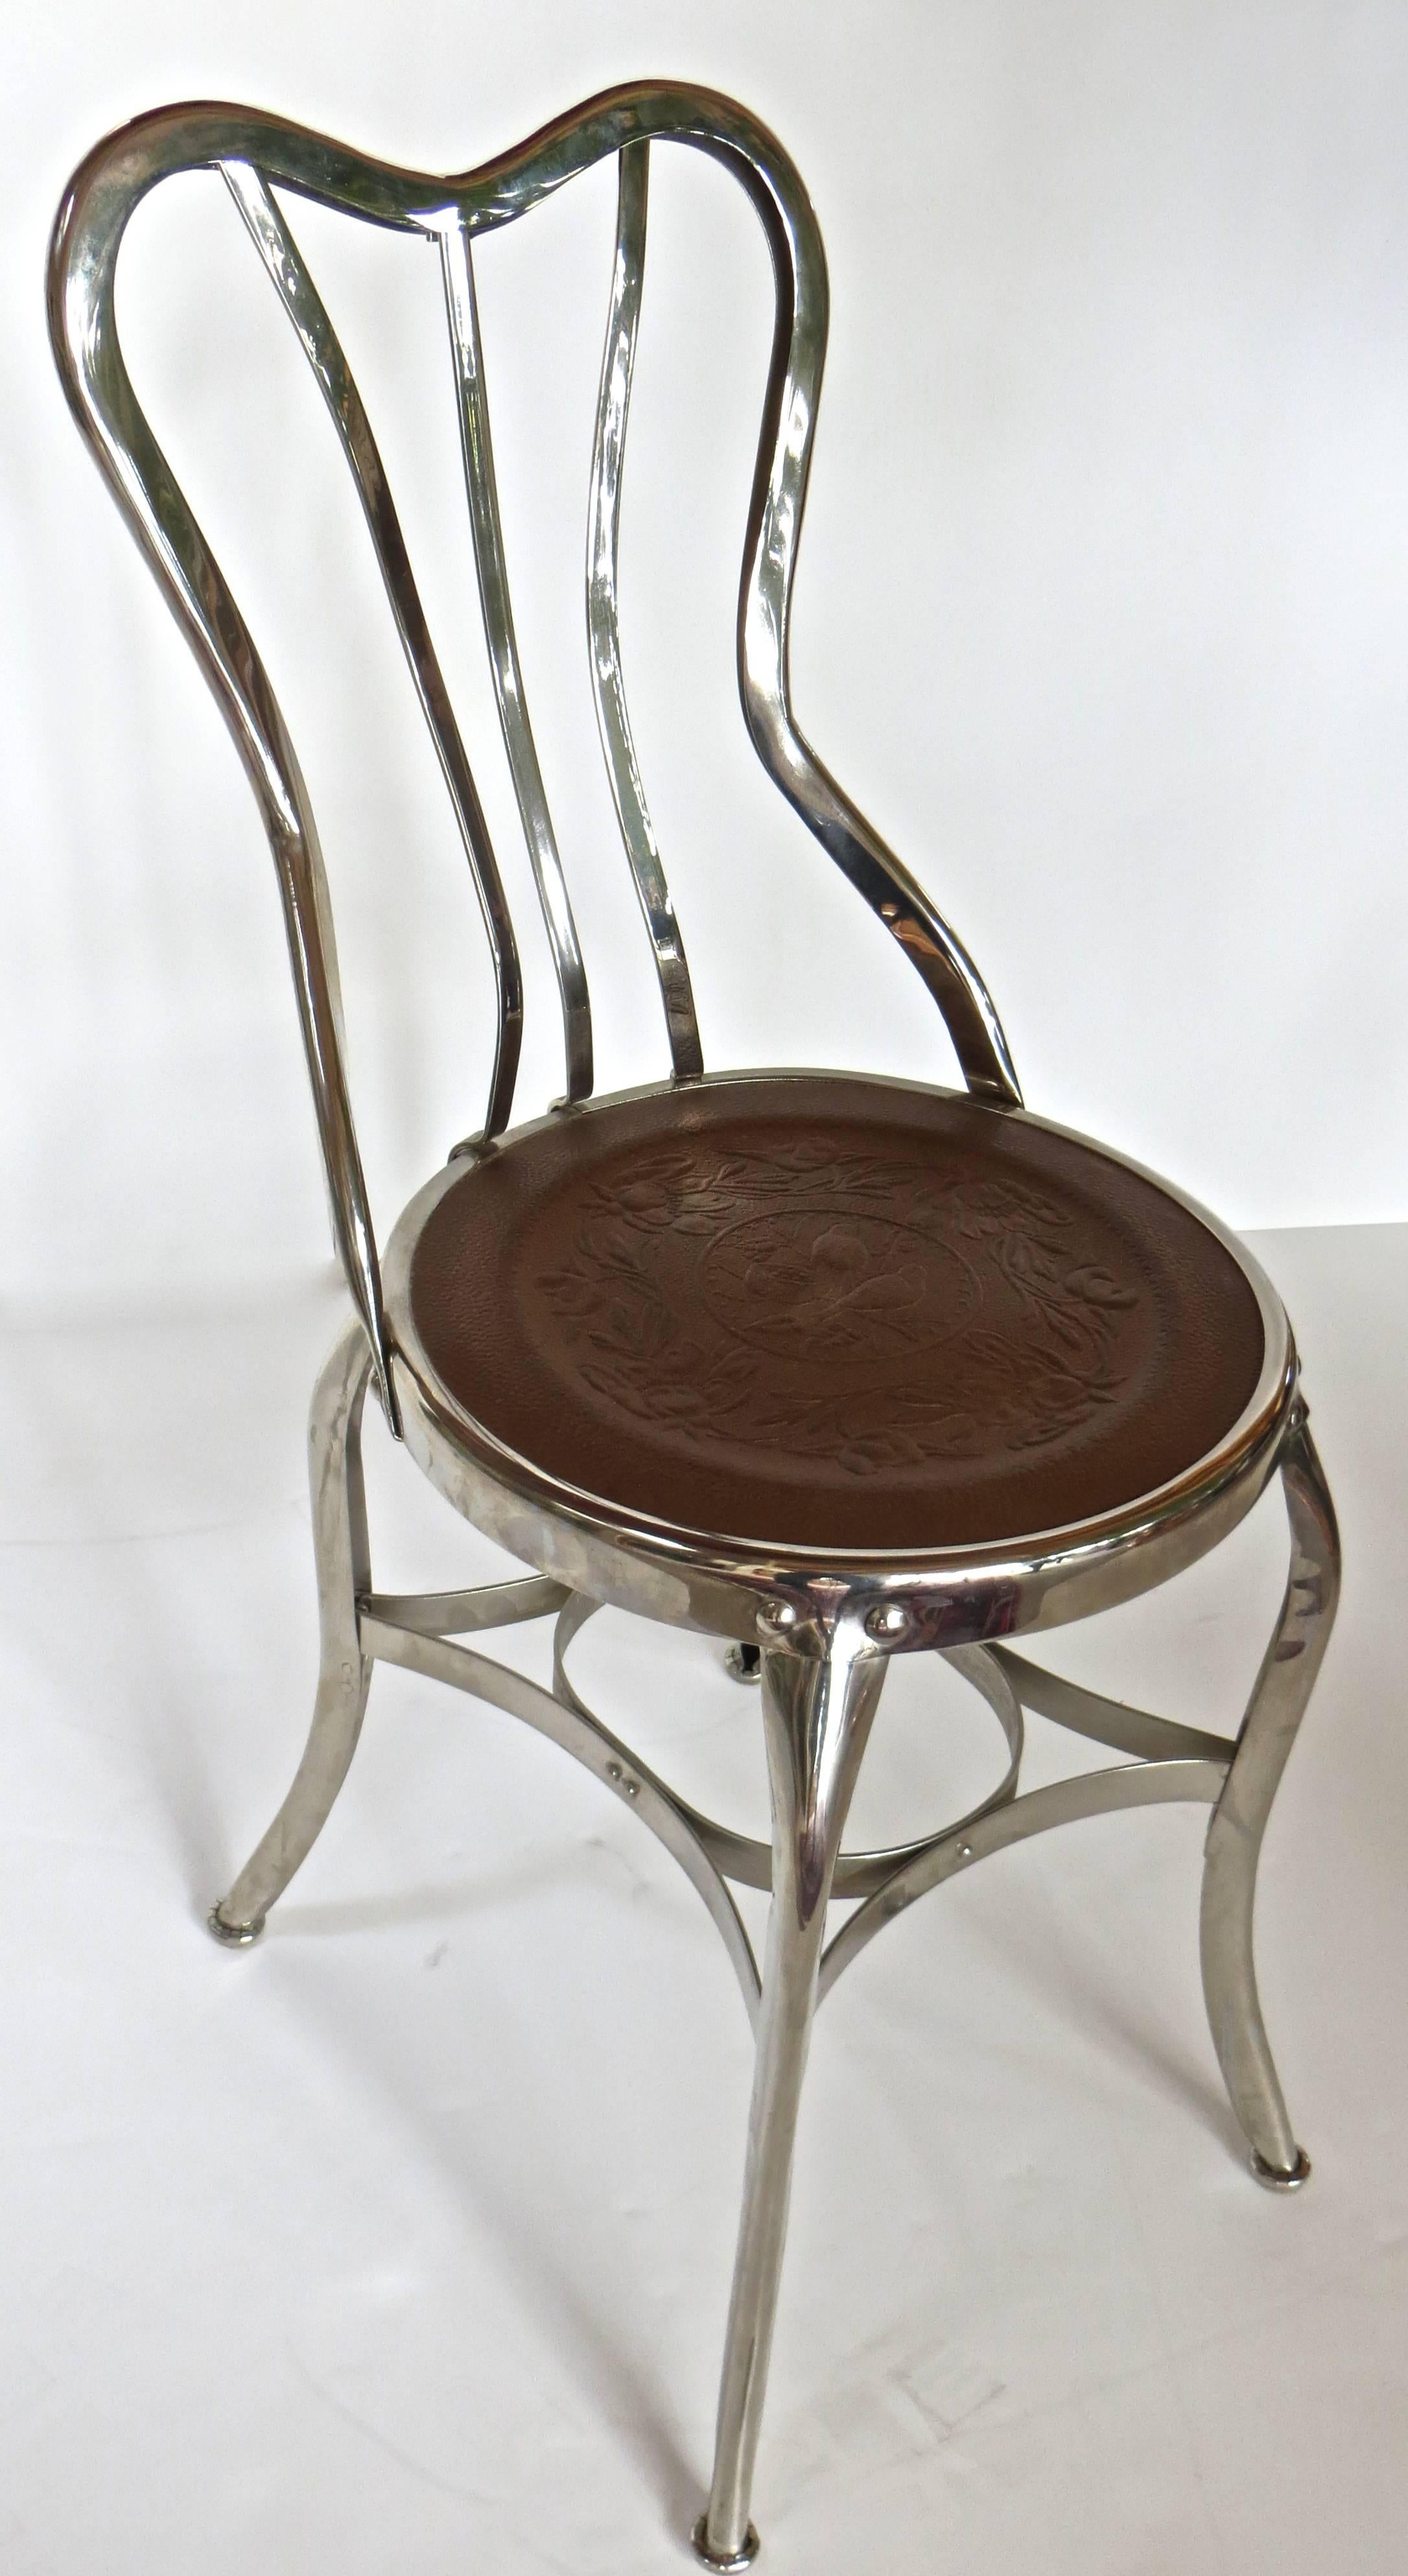 Amerikanische dreiteilige Eisdielengarnitur, bestehend aus einem Tisch und zwei Stühlen. Der Tisch hat drei Metallbeine aus Stahl, die in einem eisernen Kugel- und Klauenfuß enden, der eine runde weiße Marmorplatte trägt, die auf einem 1